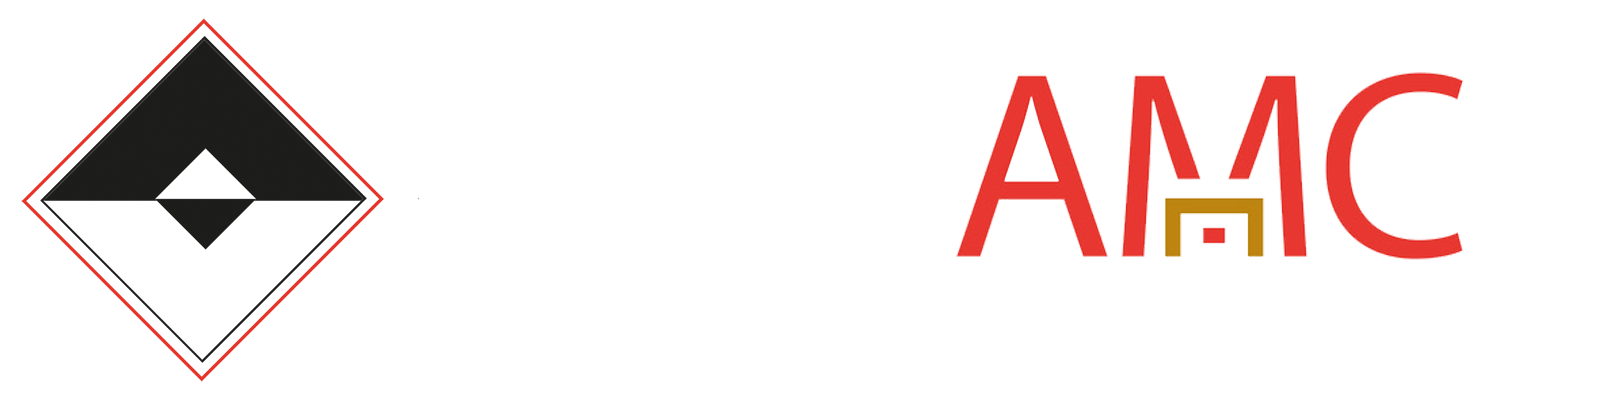 Area 4